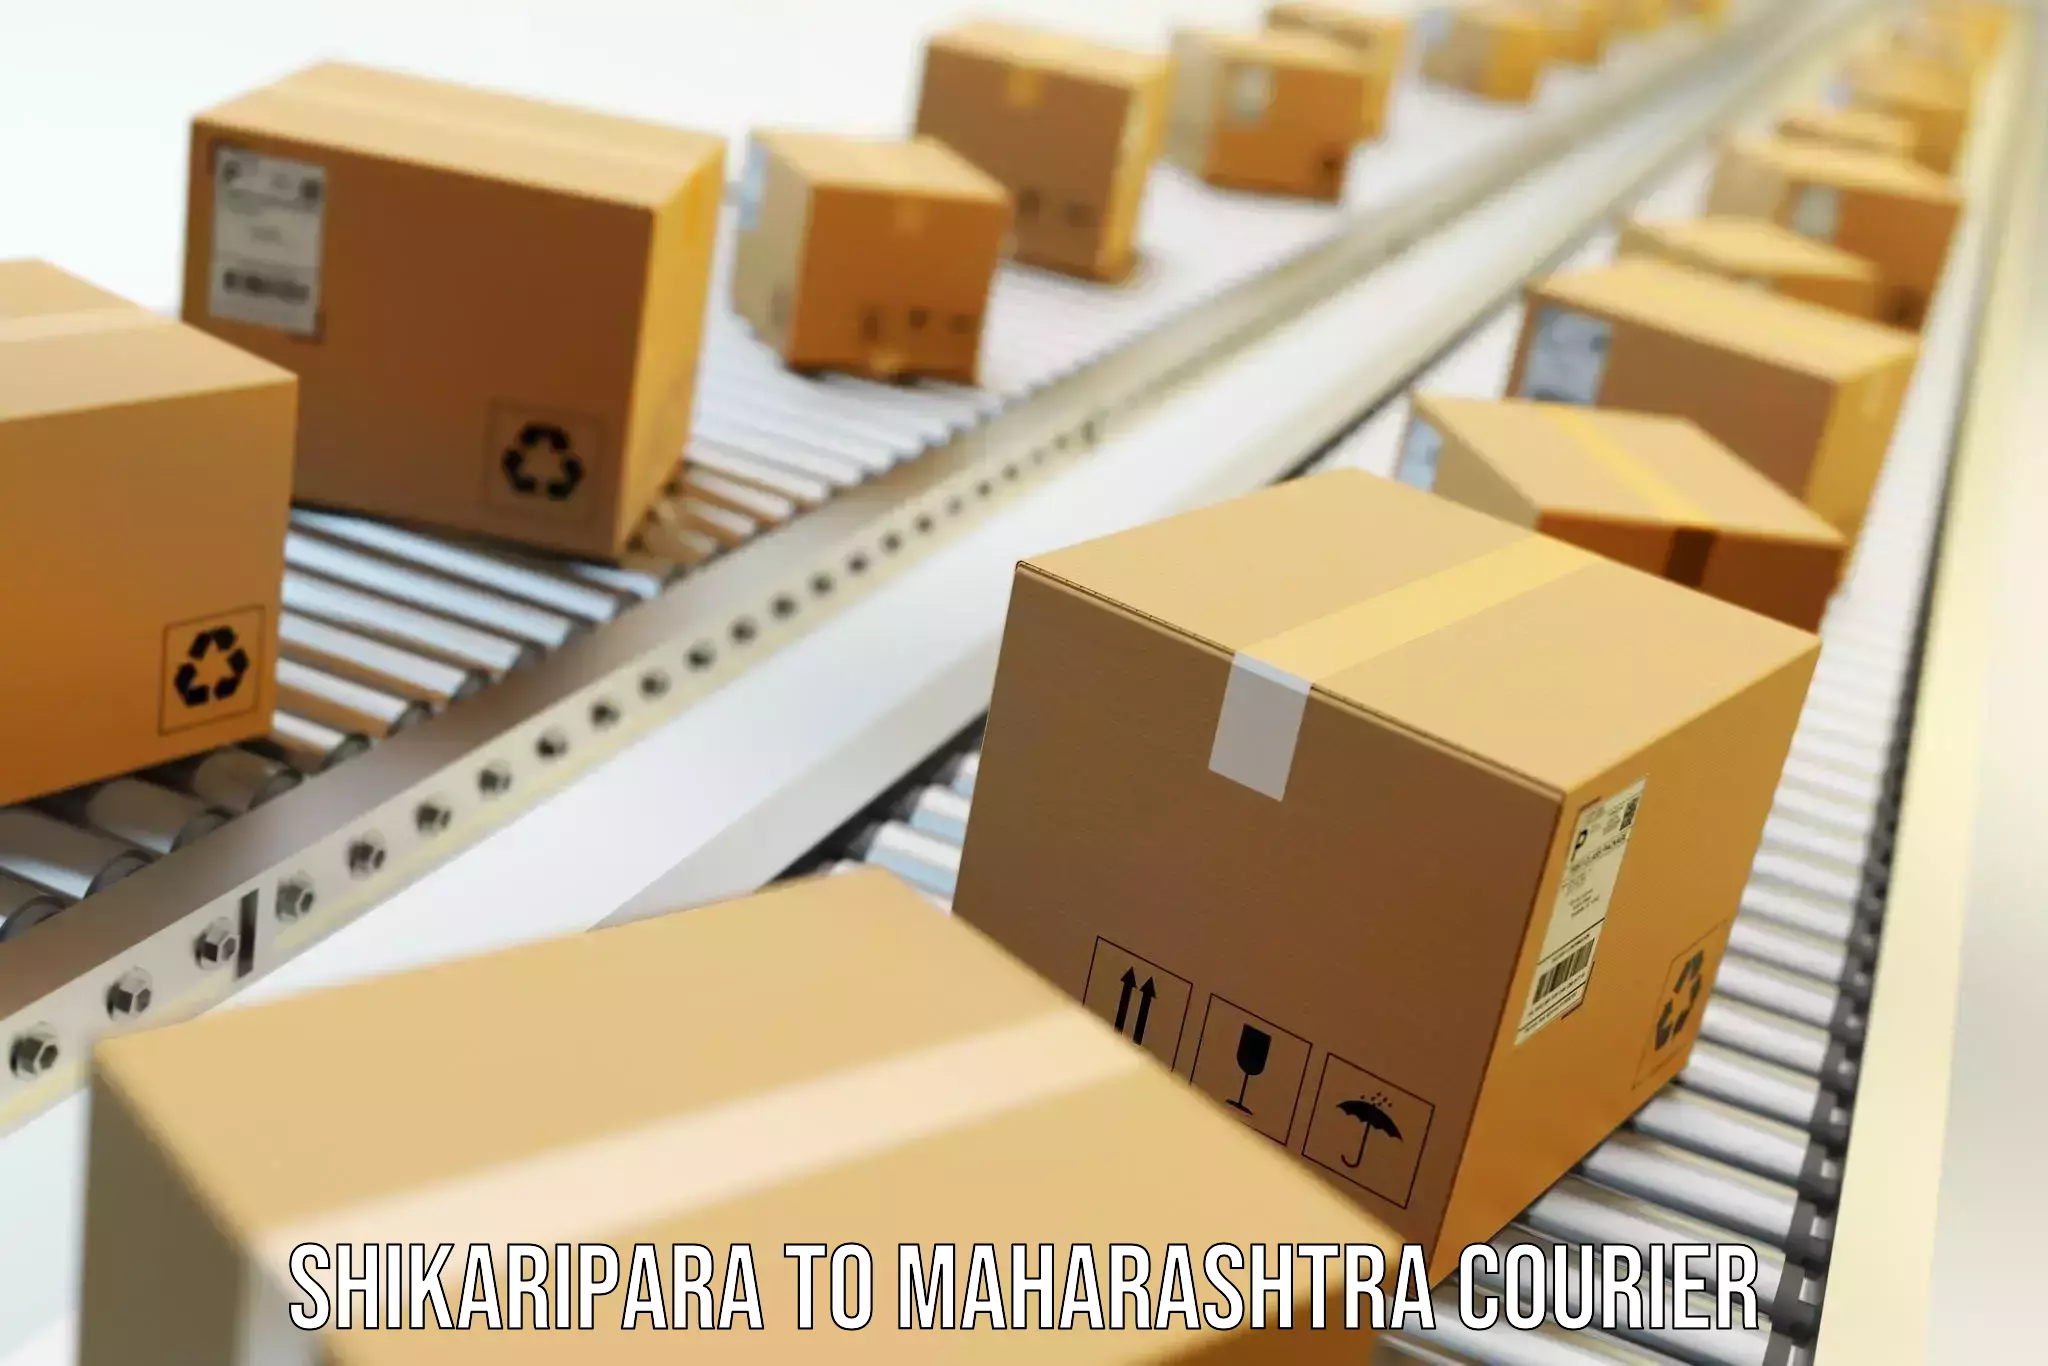 Moving and handling services Shikaripara to Amdapur